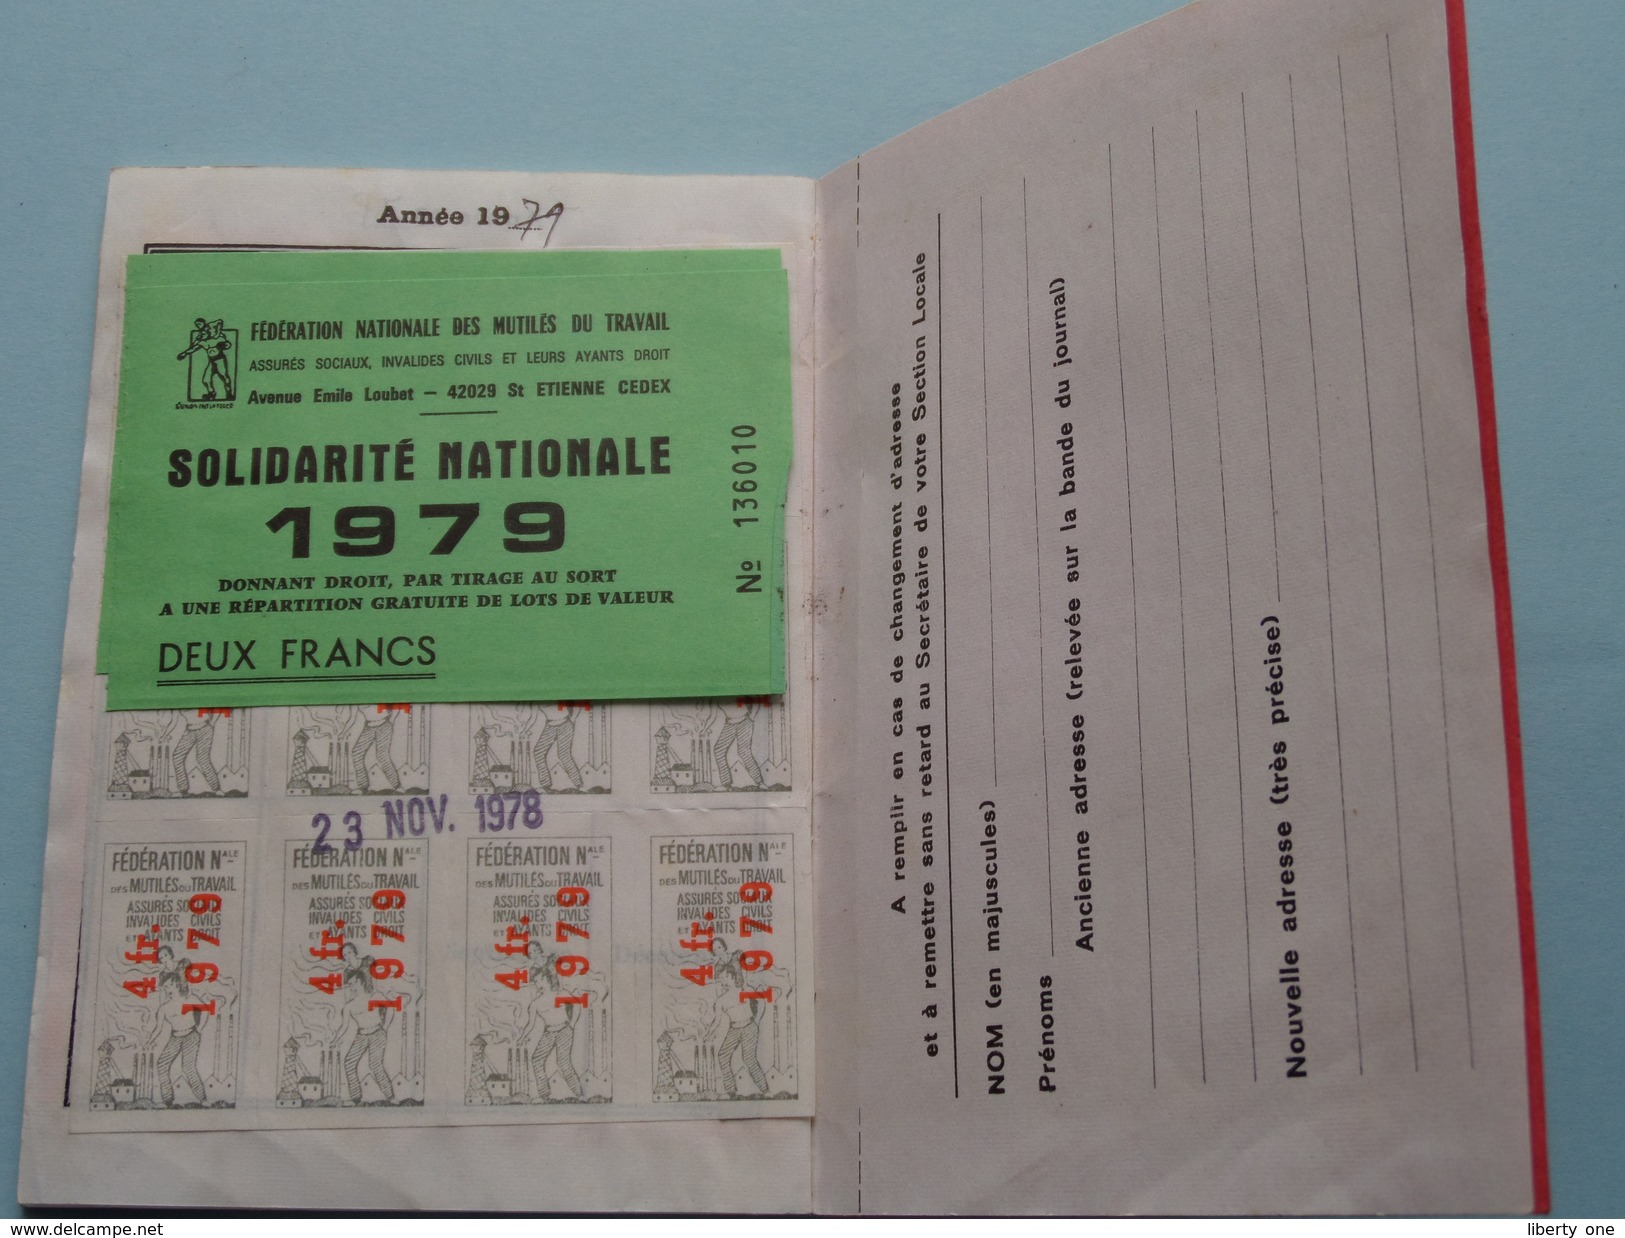 Carnet D'ADHERENT Adhésion Mutilé ou Assuré Social - Dép. CREUSE: Anno 1975/76/77/78/79 ( voir Photo detail svp ) !